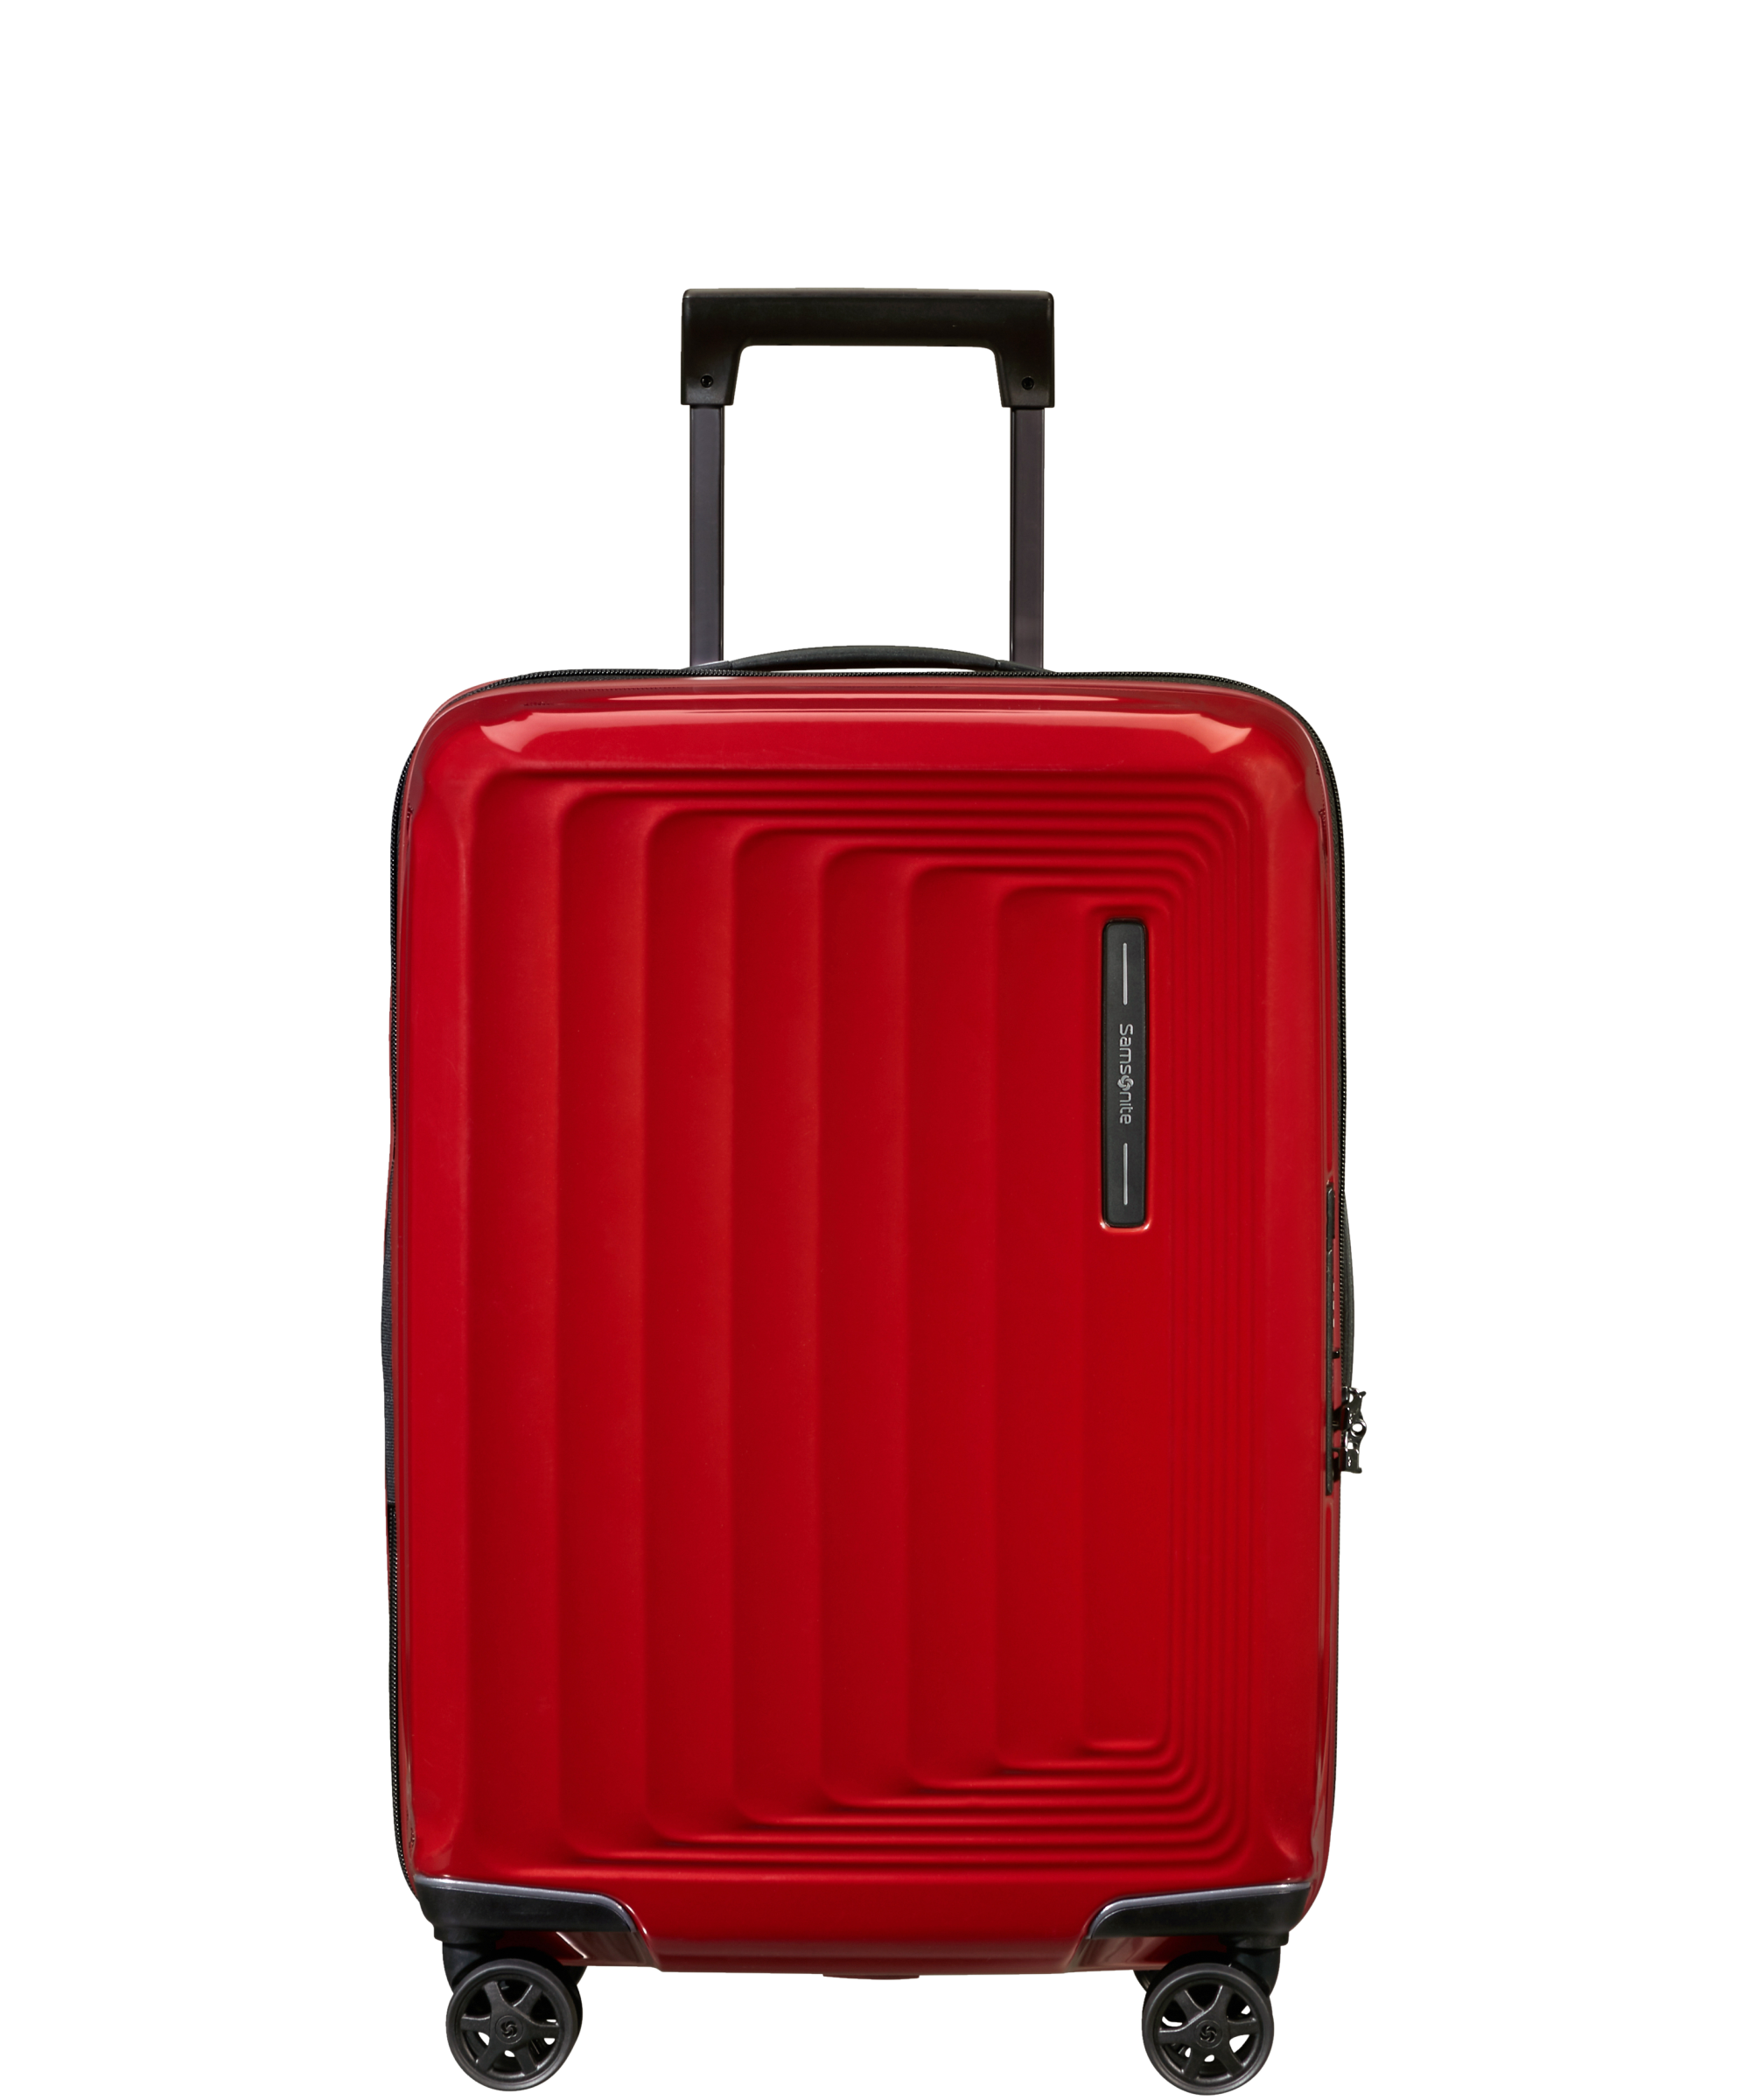 Größe S: MasterGear Hartschalen Handgepäck Koffer mit Aluminium Rahmen in braun für zahlreiche Fluggesellschaften geeignet | Trolley mit 4 Rollen ABS 53 x 39 x 20 cm TSA Reisekoffer 